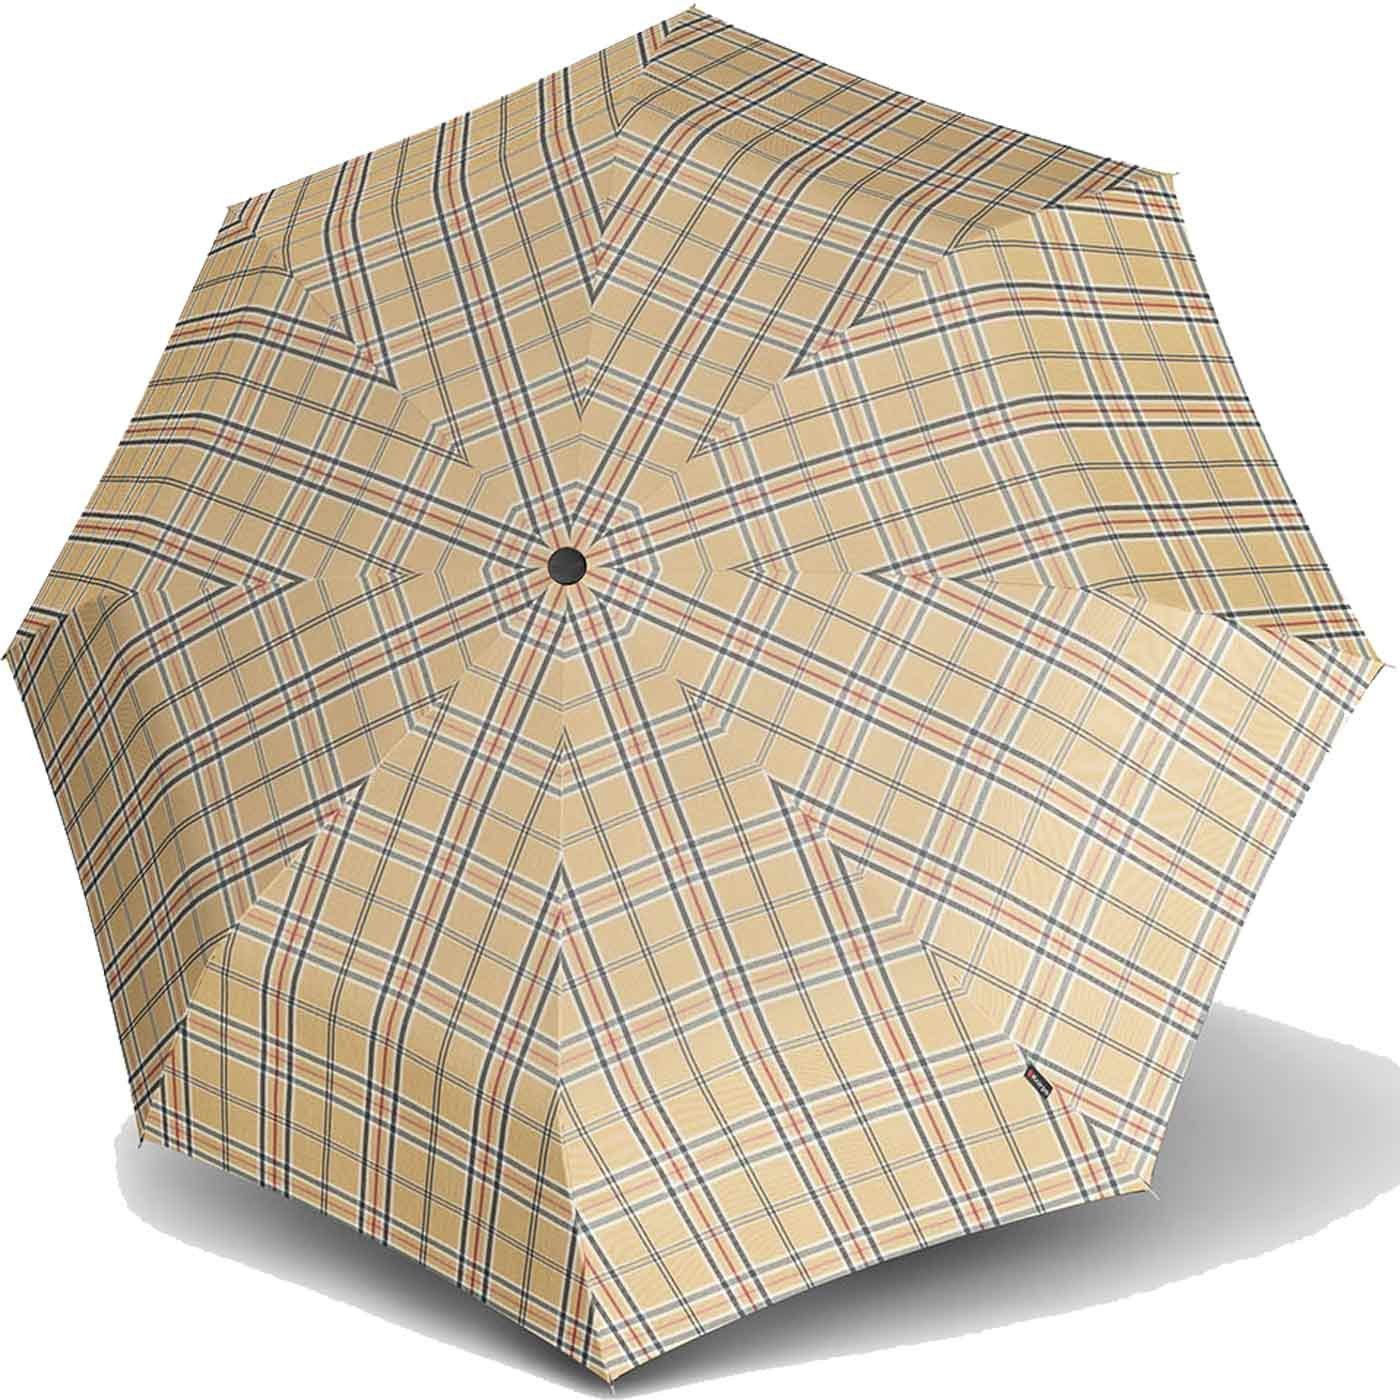 Knirps® Taschenregenschirm stabiler Herrenschirm mit Auf-Automatik,  klassisch-edel mit Karo-Muster, Maße: Regenschirm geöffnet 97 cm, Schirm  geschlossen 28 cm groß